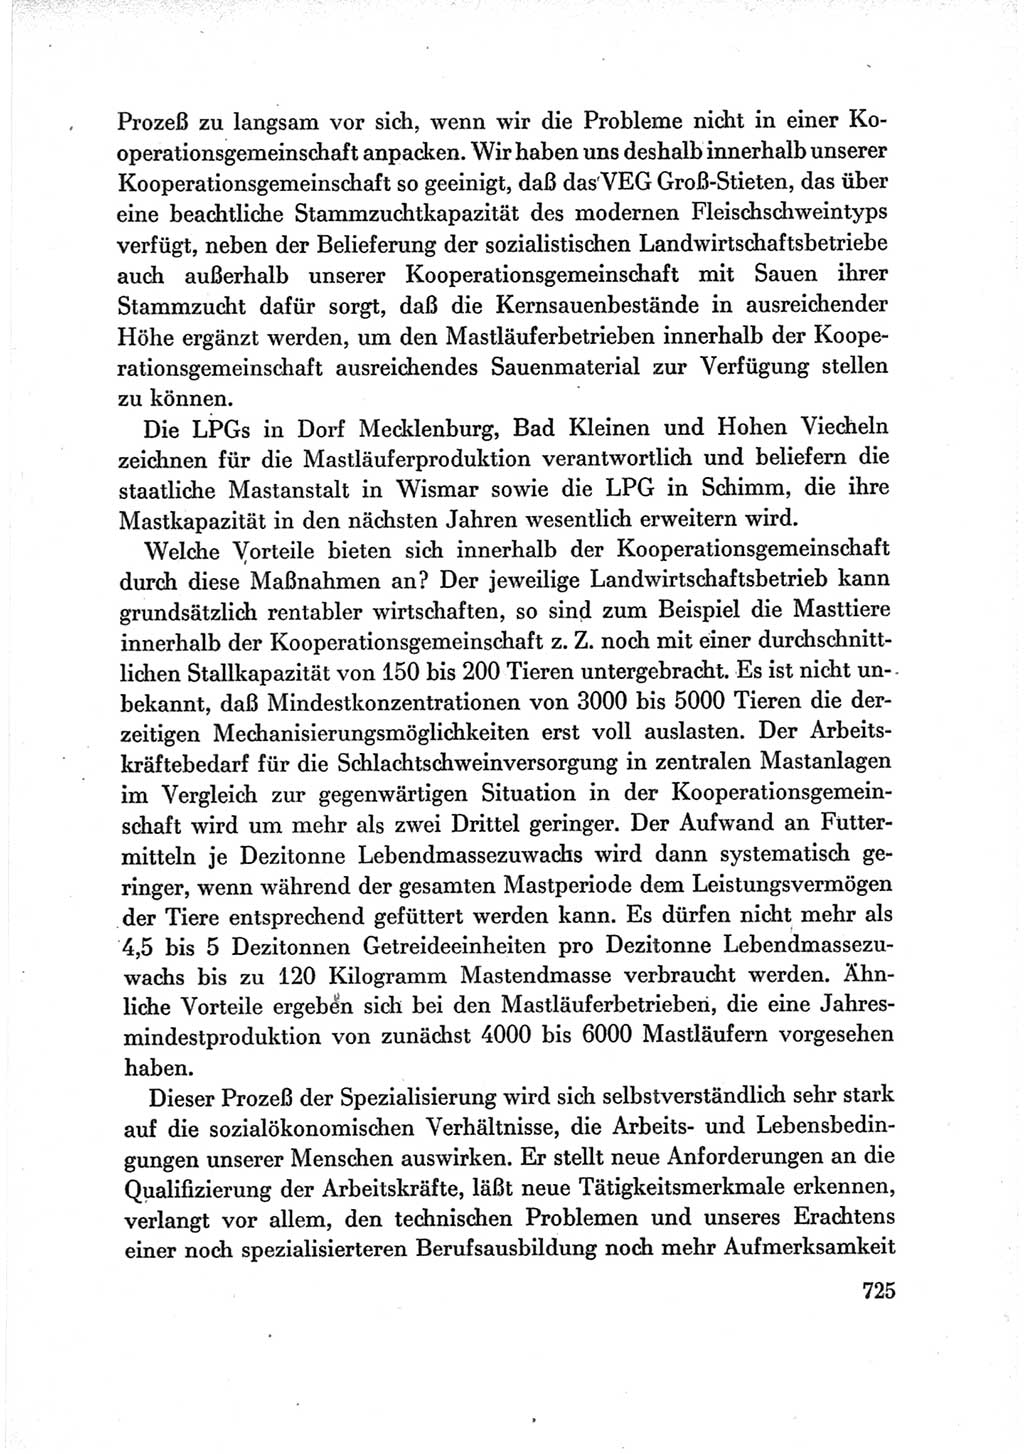 Protokoll der Verhandlungen des Ⅶ. Parteitages der Sozialistischen Einheitspartei Deutschlands (SED) [Deutsche Demokratische Republik (DDR)] 1967, Band Ⅲ, Seite 725 (Prot. Verh. Ⅶ. PT SED DDR 1967, Bd. Ⅲ, S. 725)